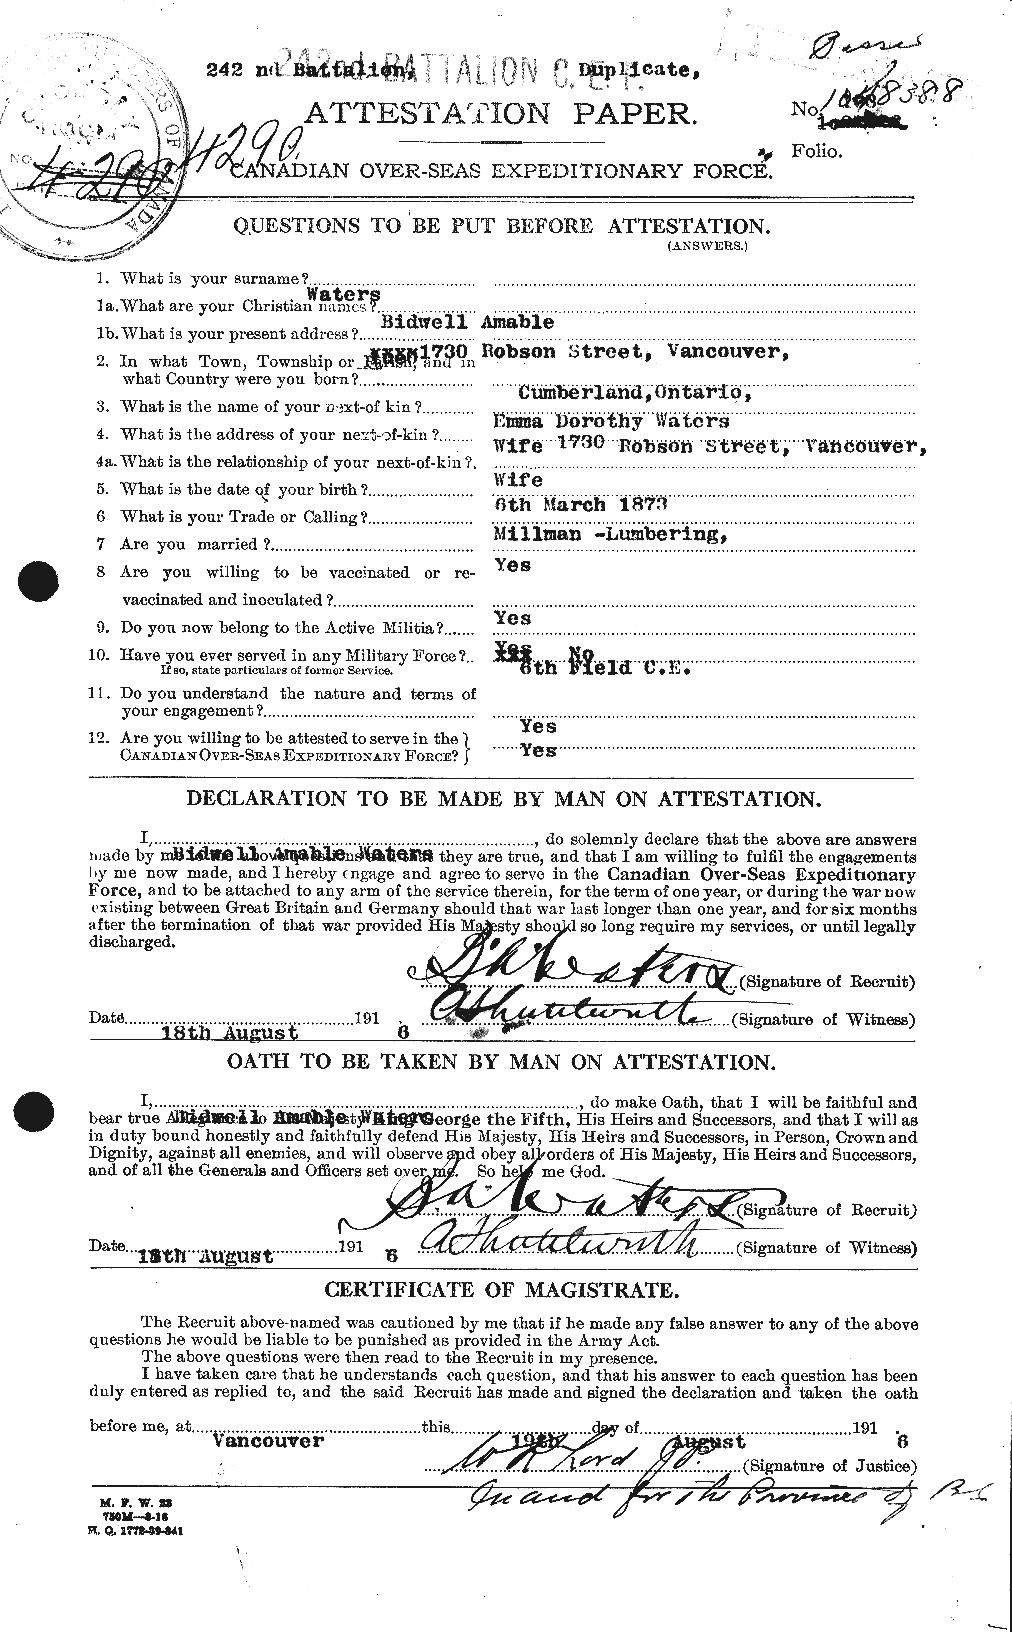 Dossiers du Personnel de la Première Guerre mondiale - CEC 658163a